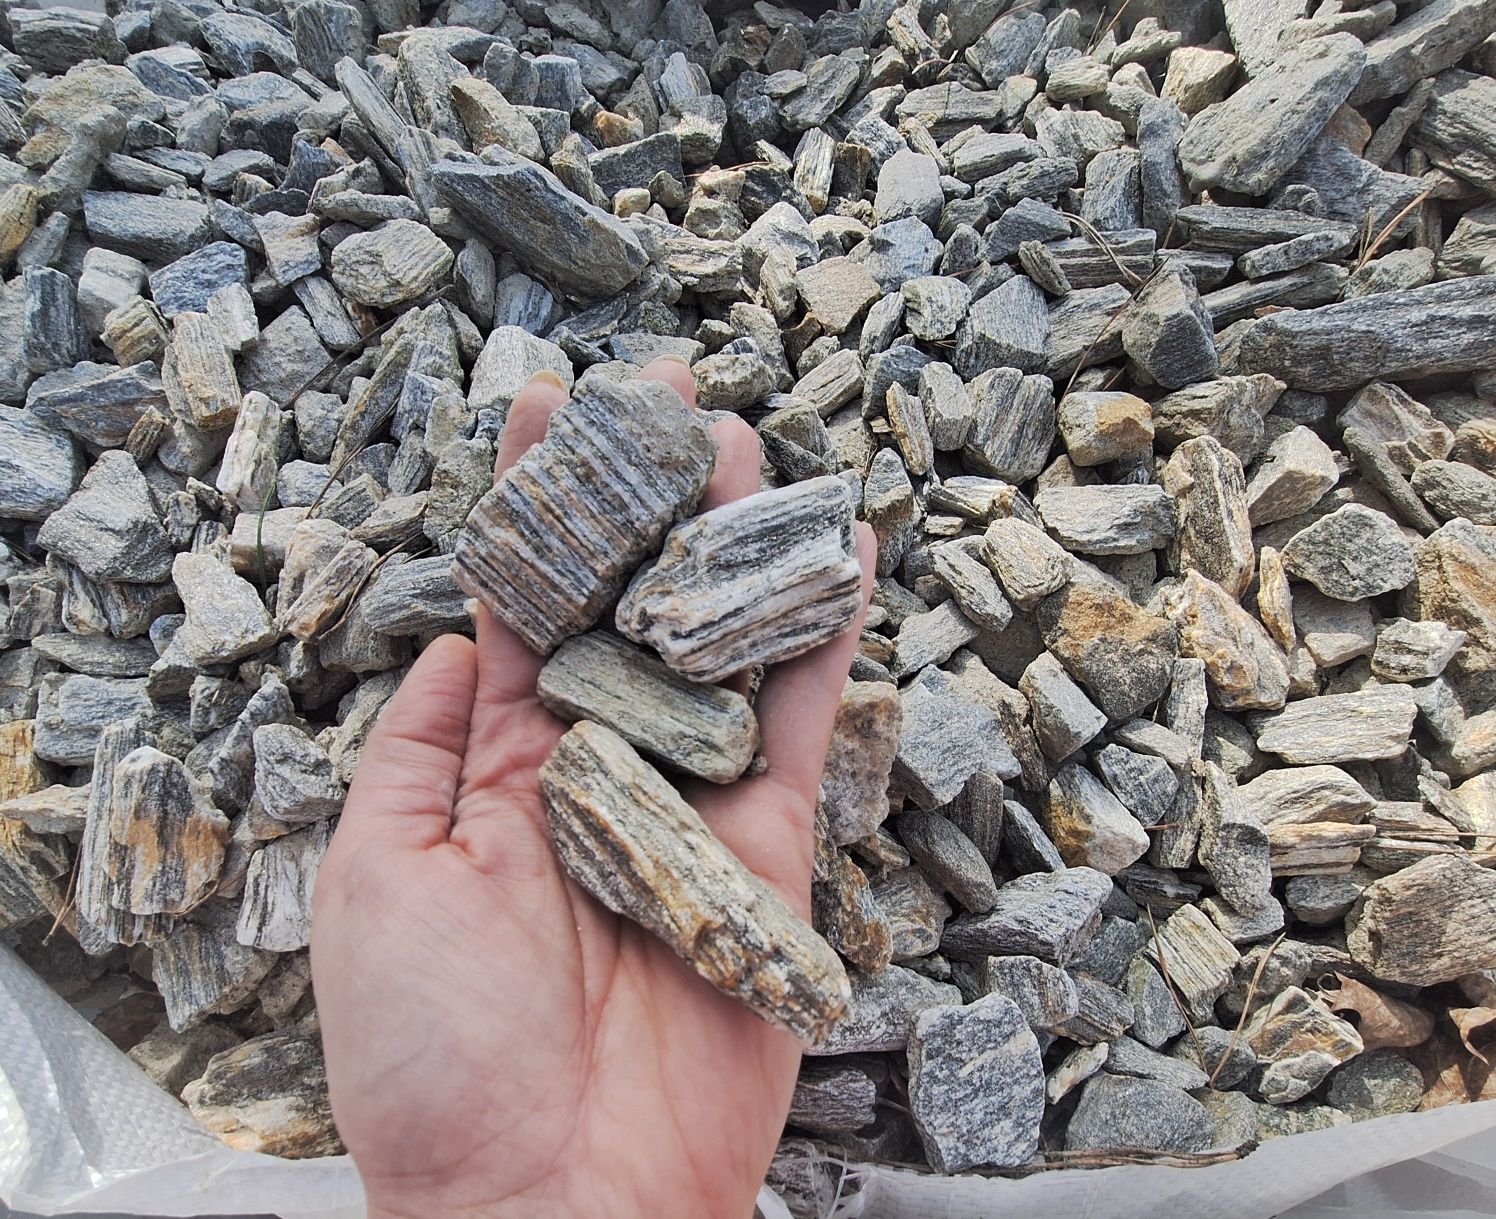 Kora kamienna z dostawą gnejs szary brąz gabion grys kamień naturalny